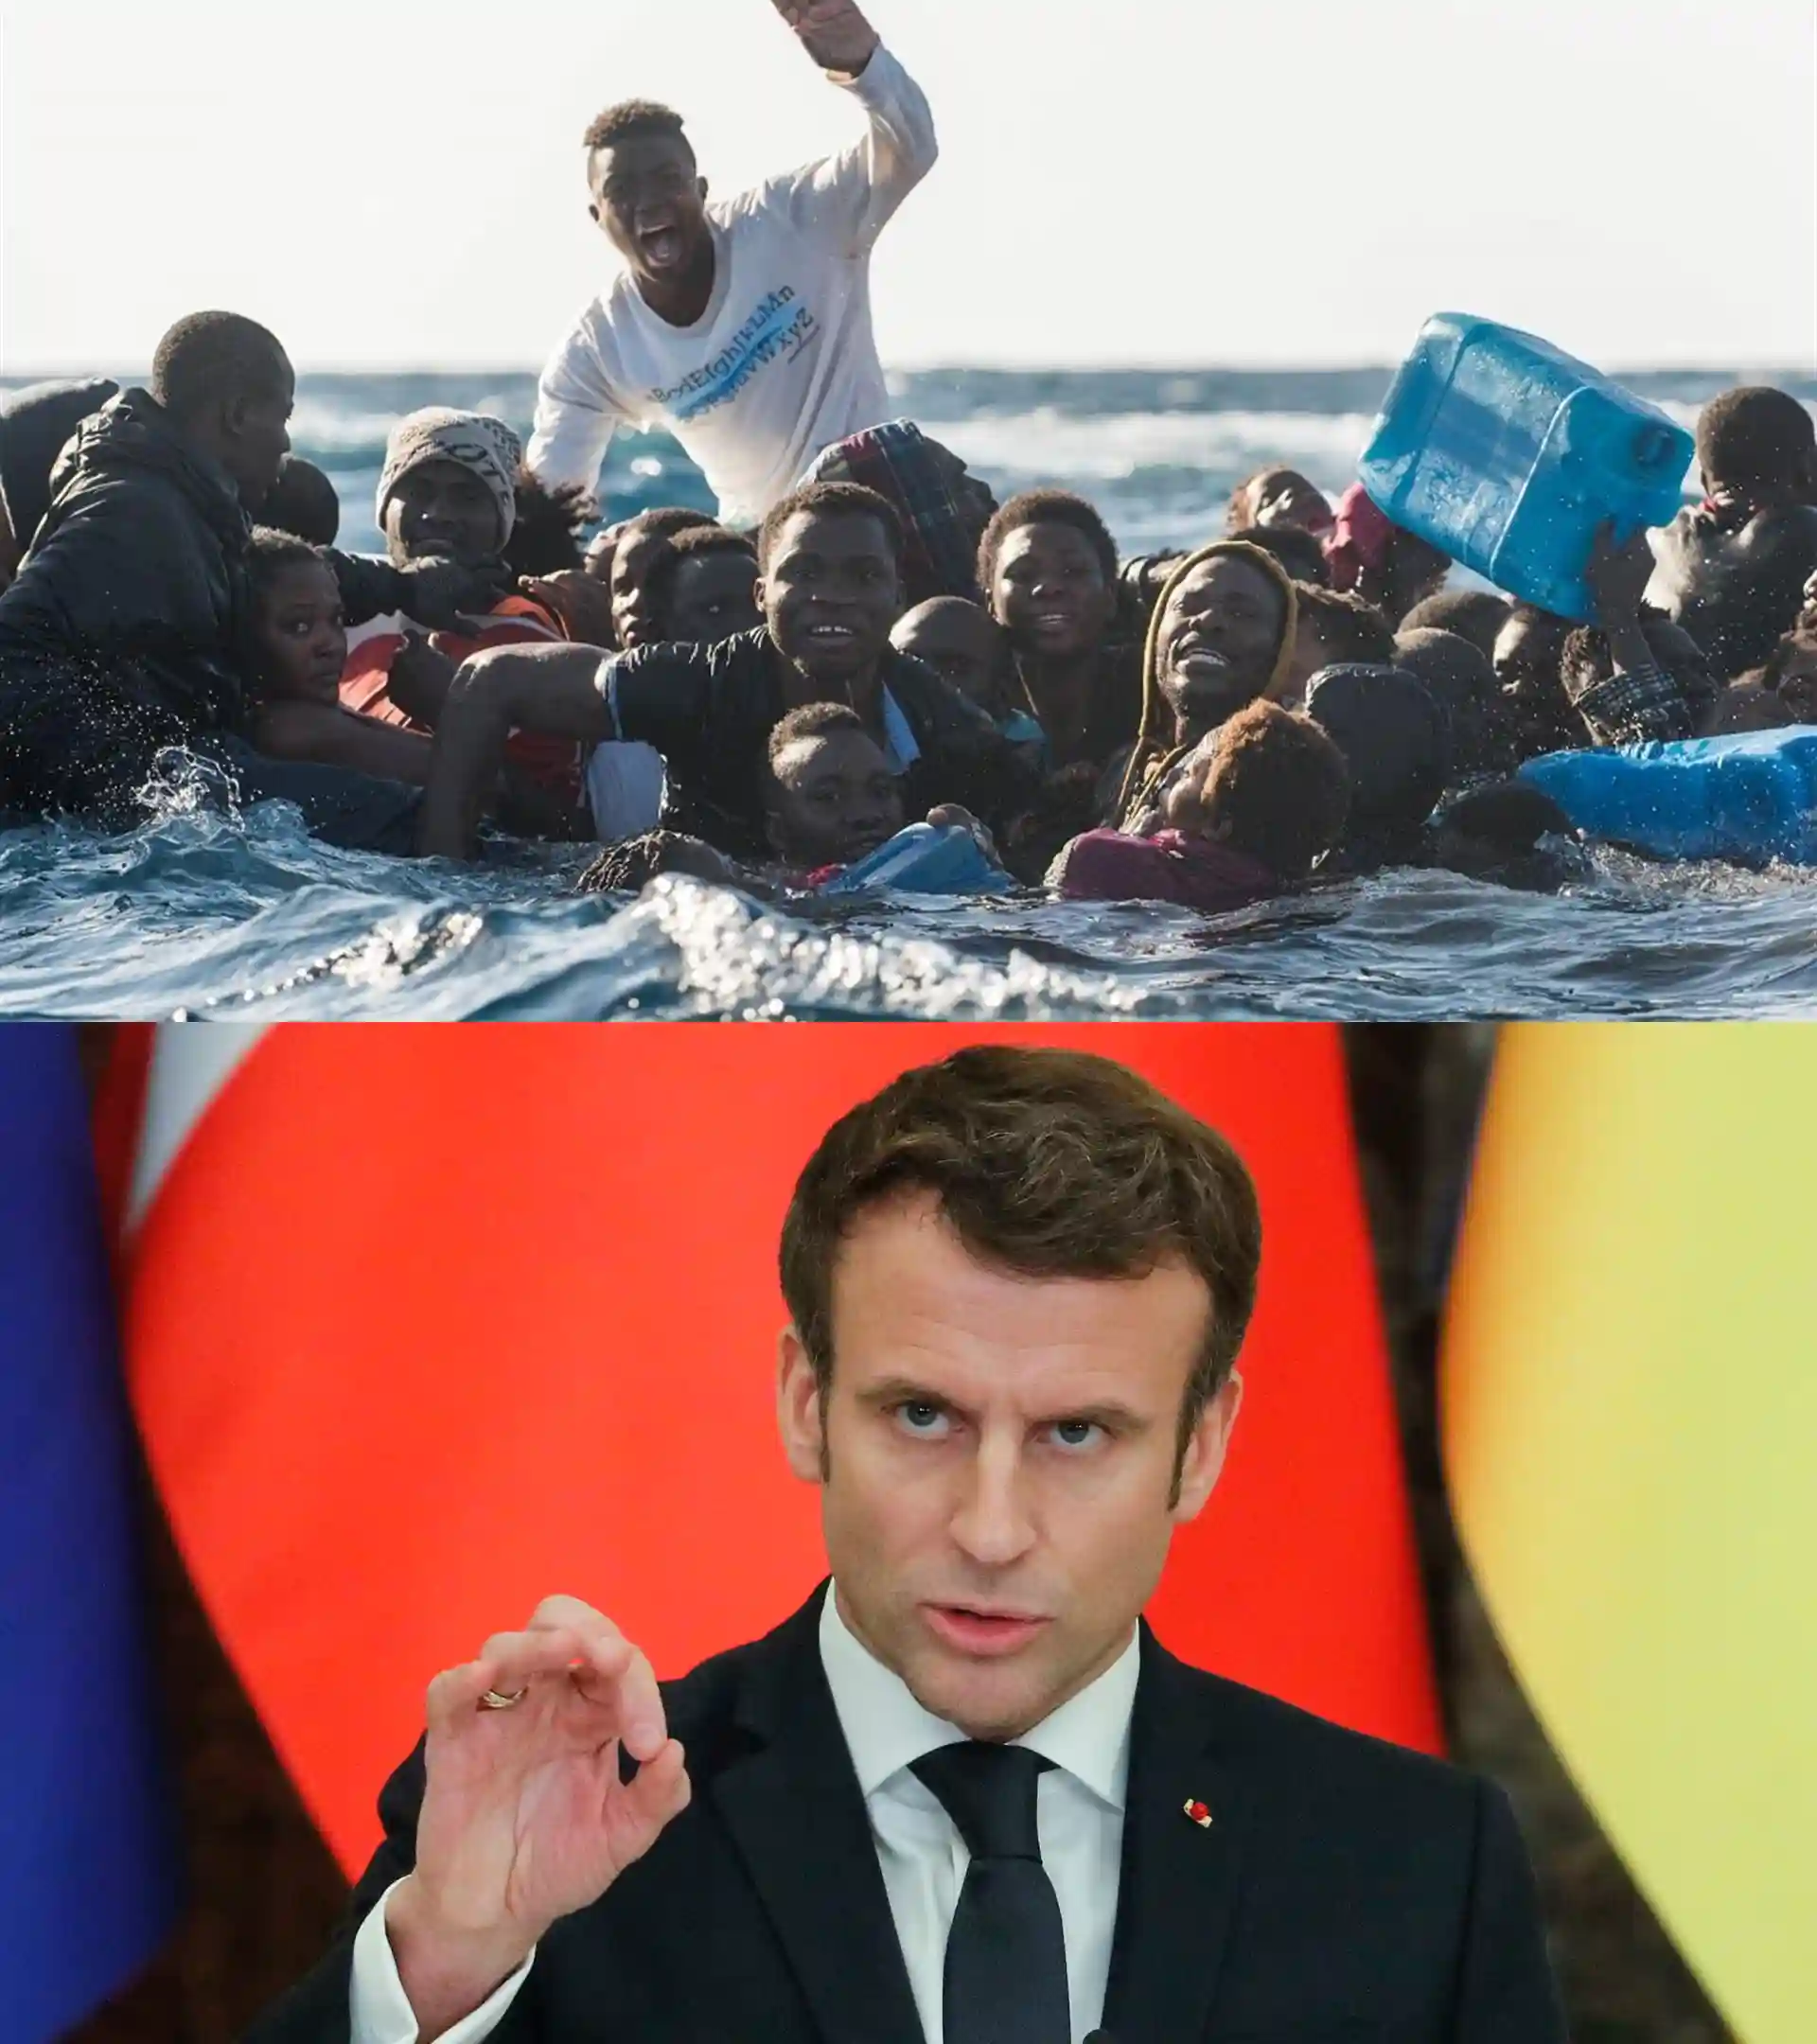 SOS Mediterraneo migranti in mare aiuto Emmanuel Macron presidente Francia